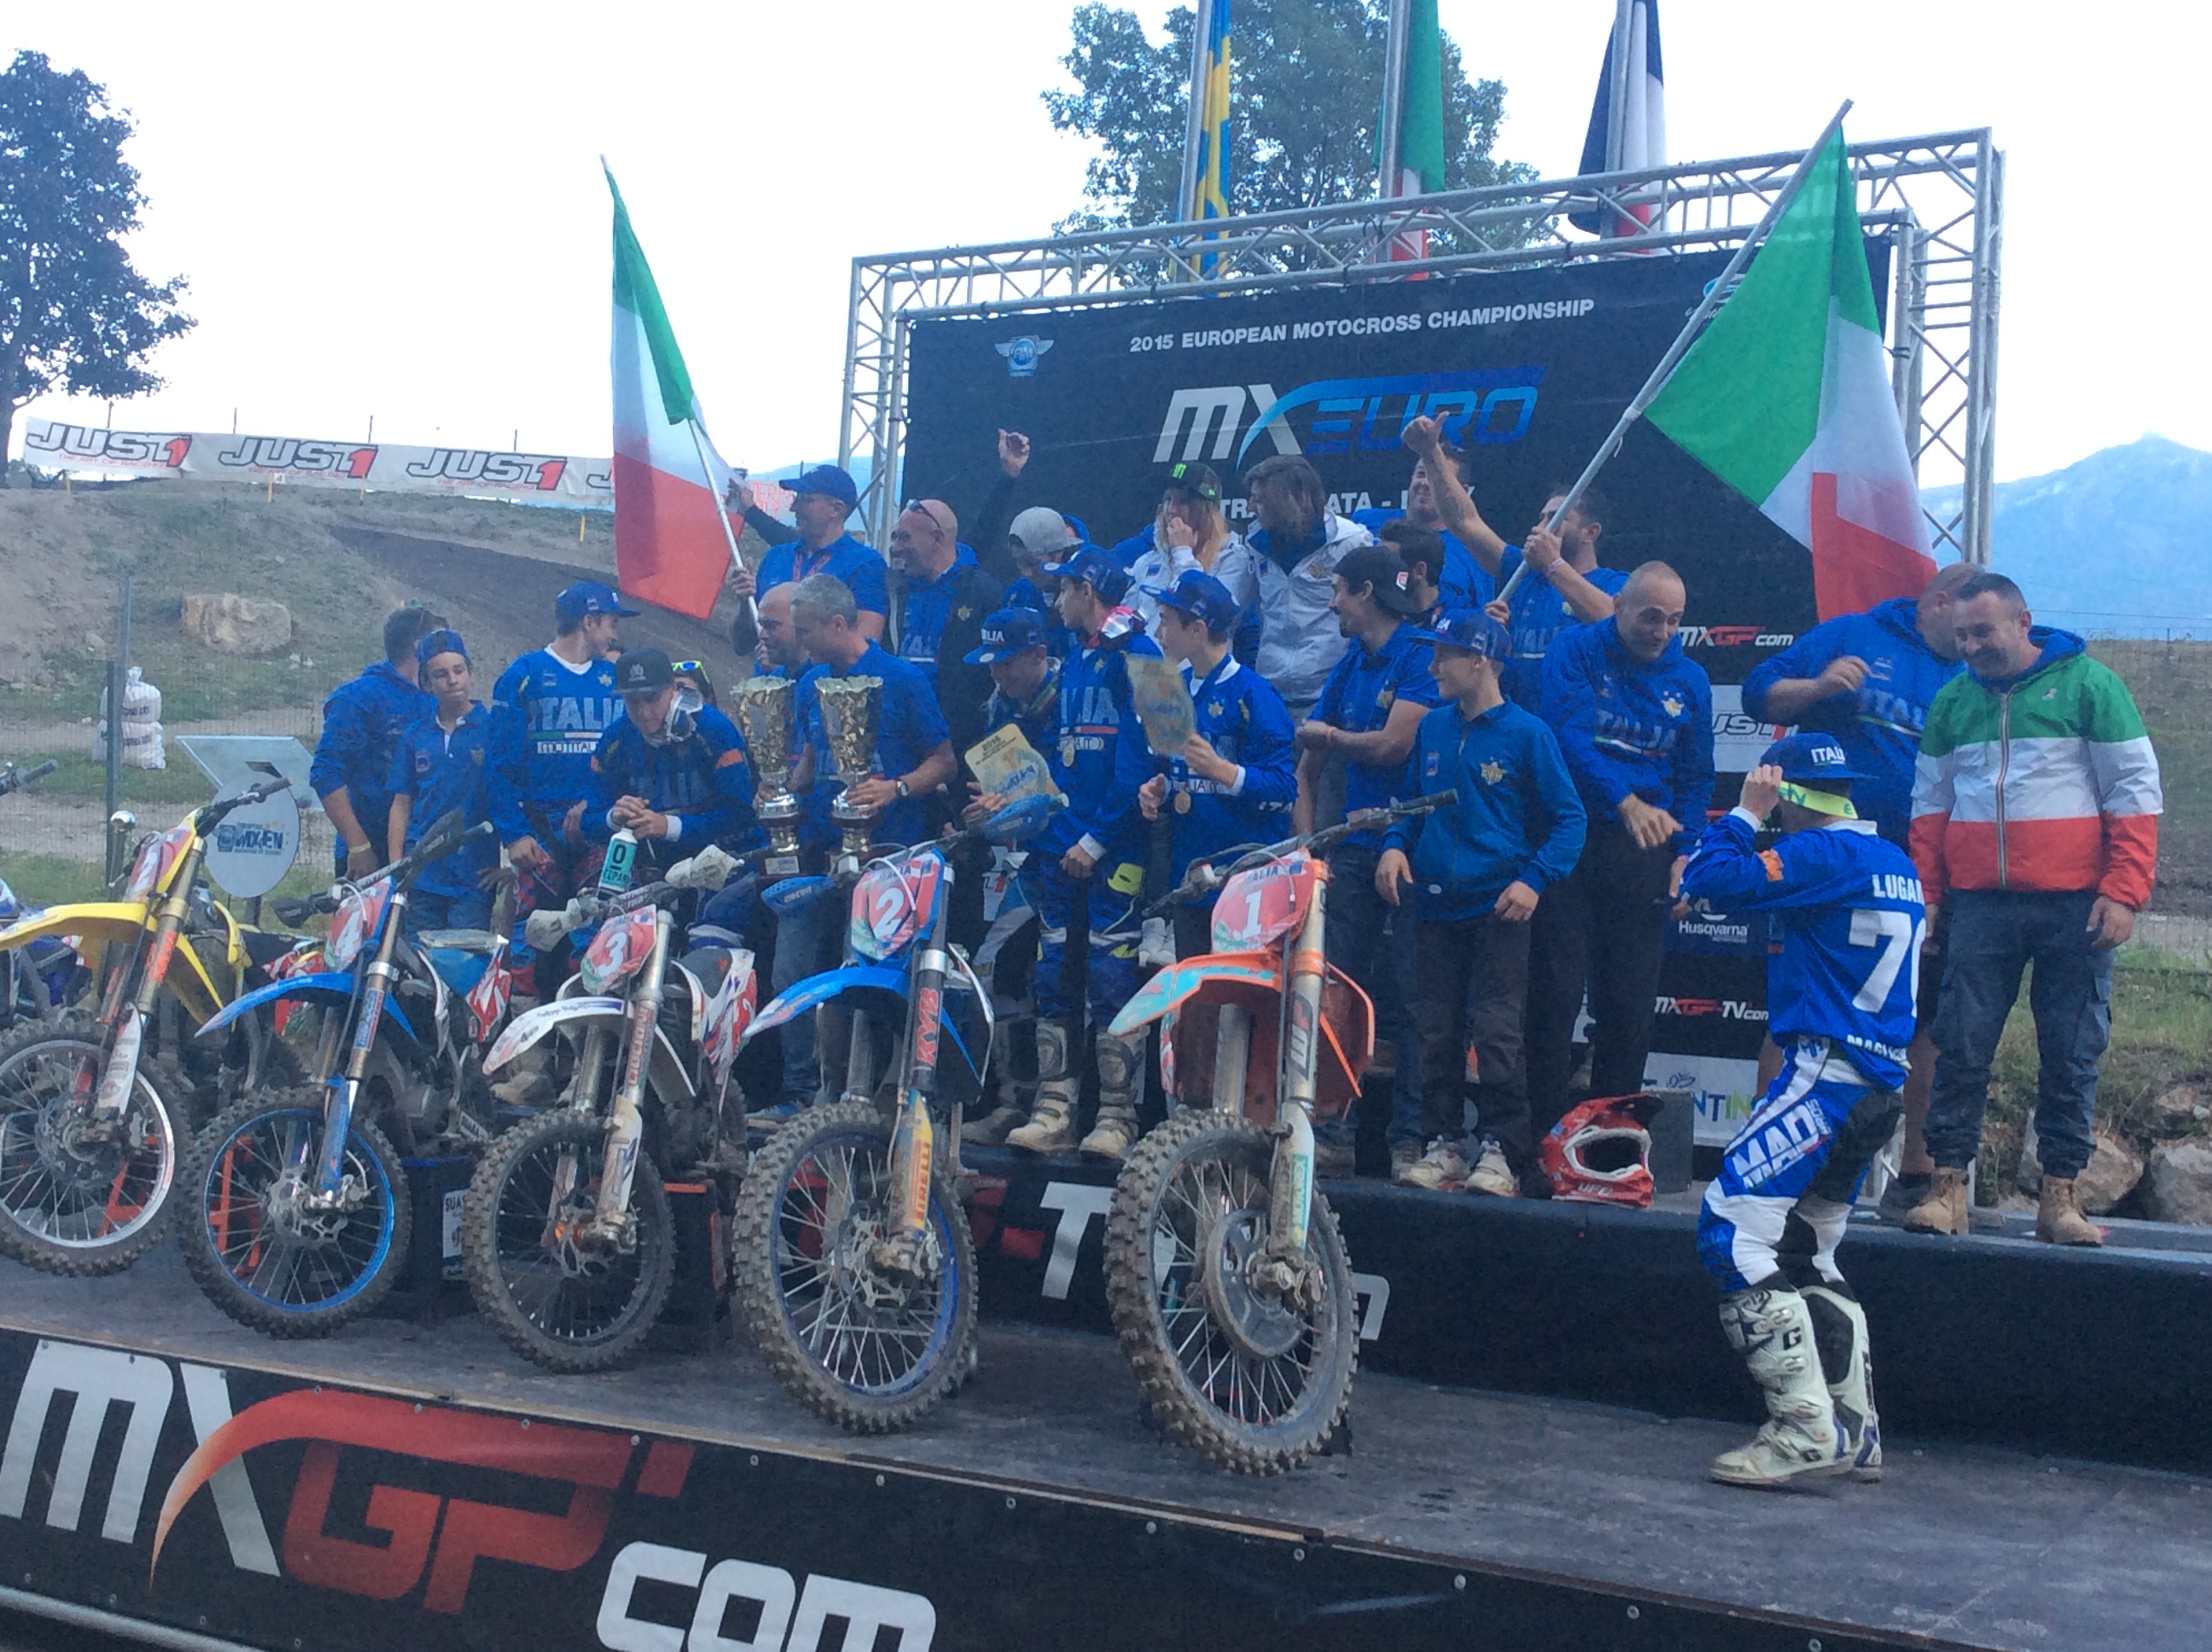  Trionfo dell’Italia al Motocross delle Nazioni Europee